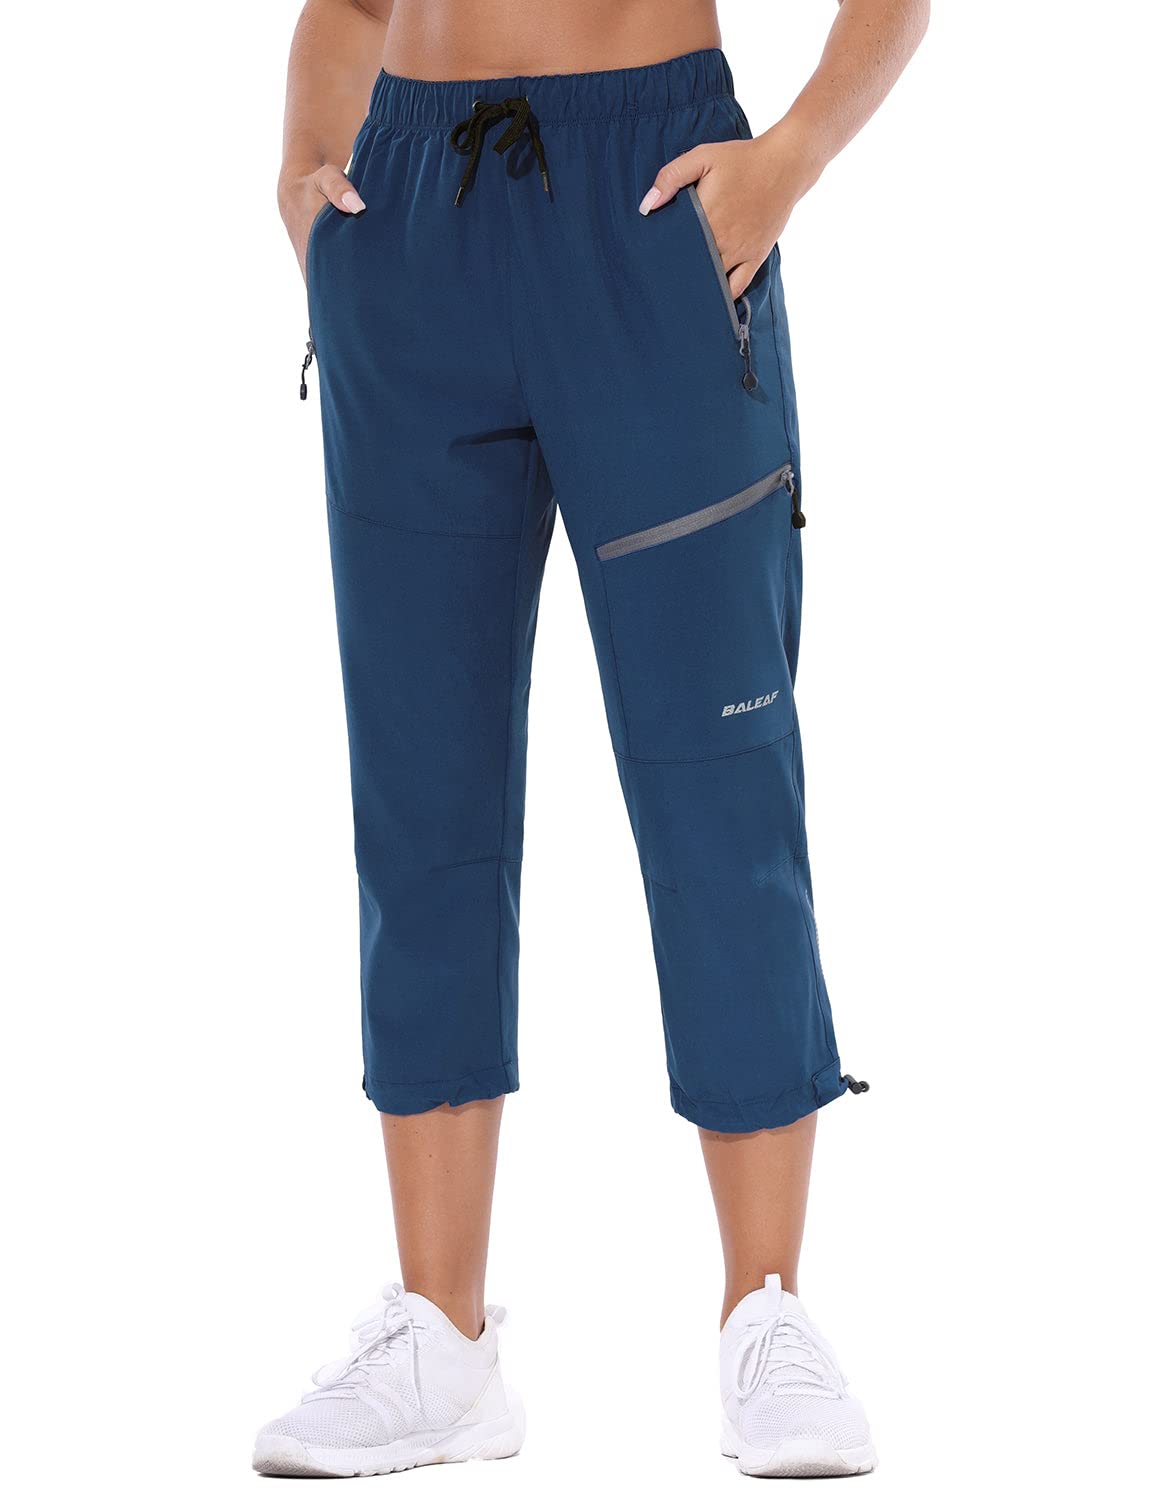 Baleaf Womens Hiking Cargo Capris Outdoor Lightweight Water Resistant Pants  Upf 50 Zipper Pockets Navy Blue Size Xxl